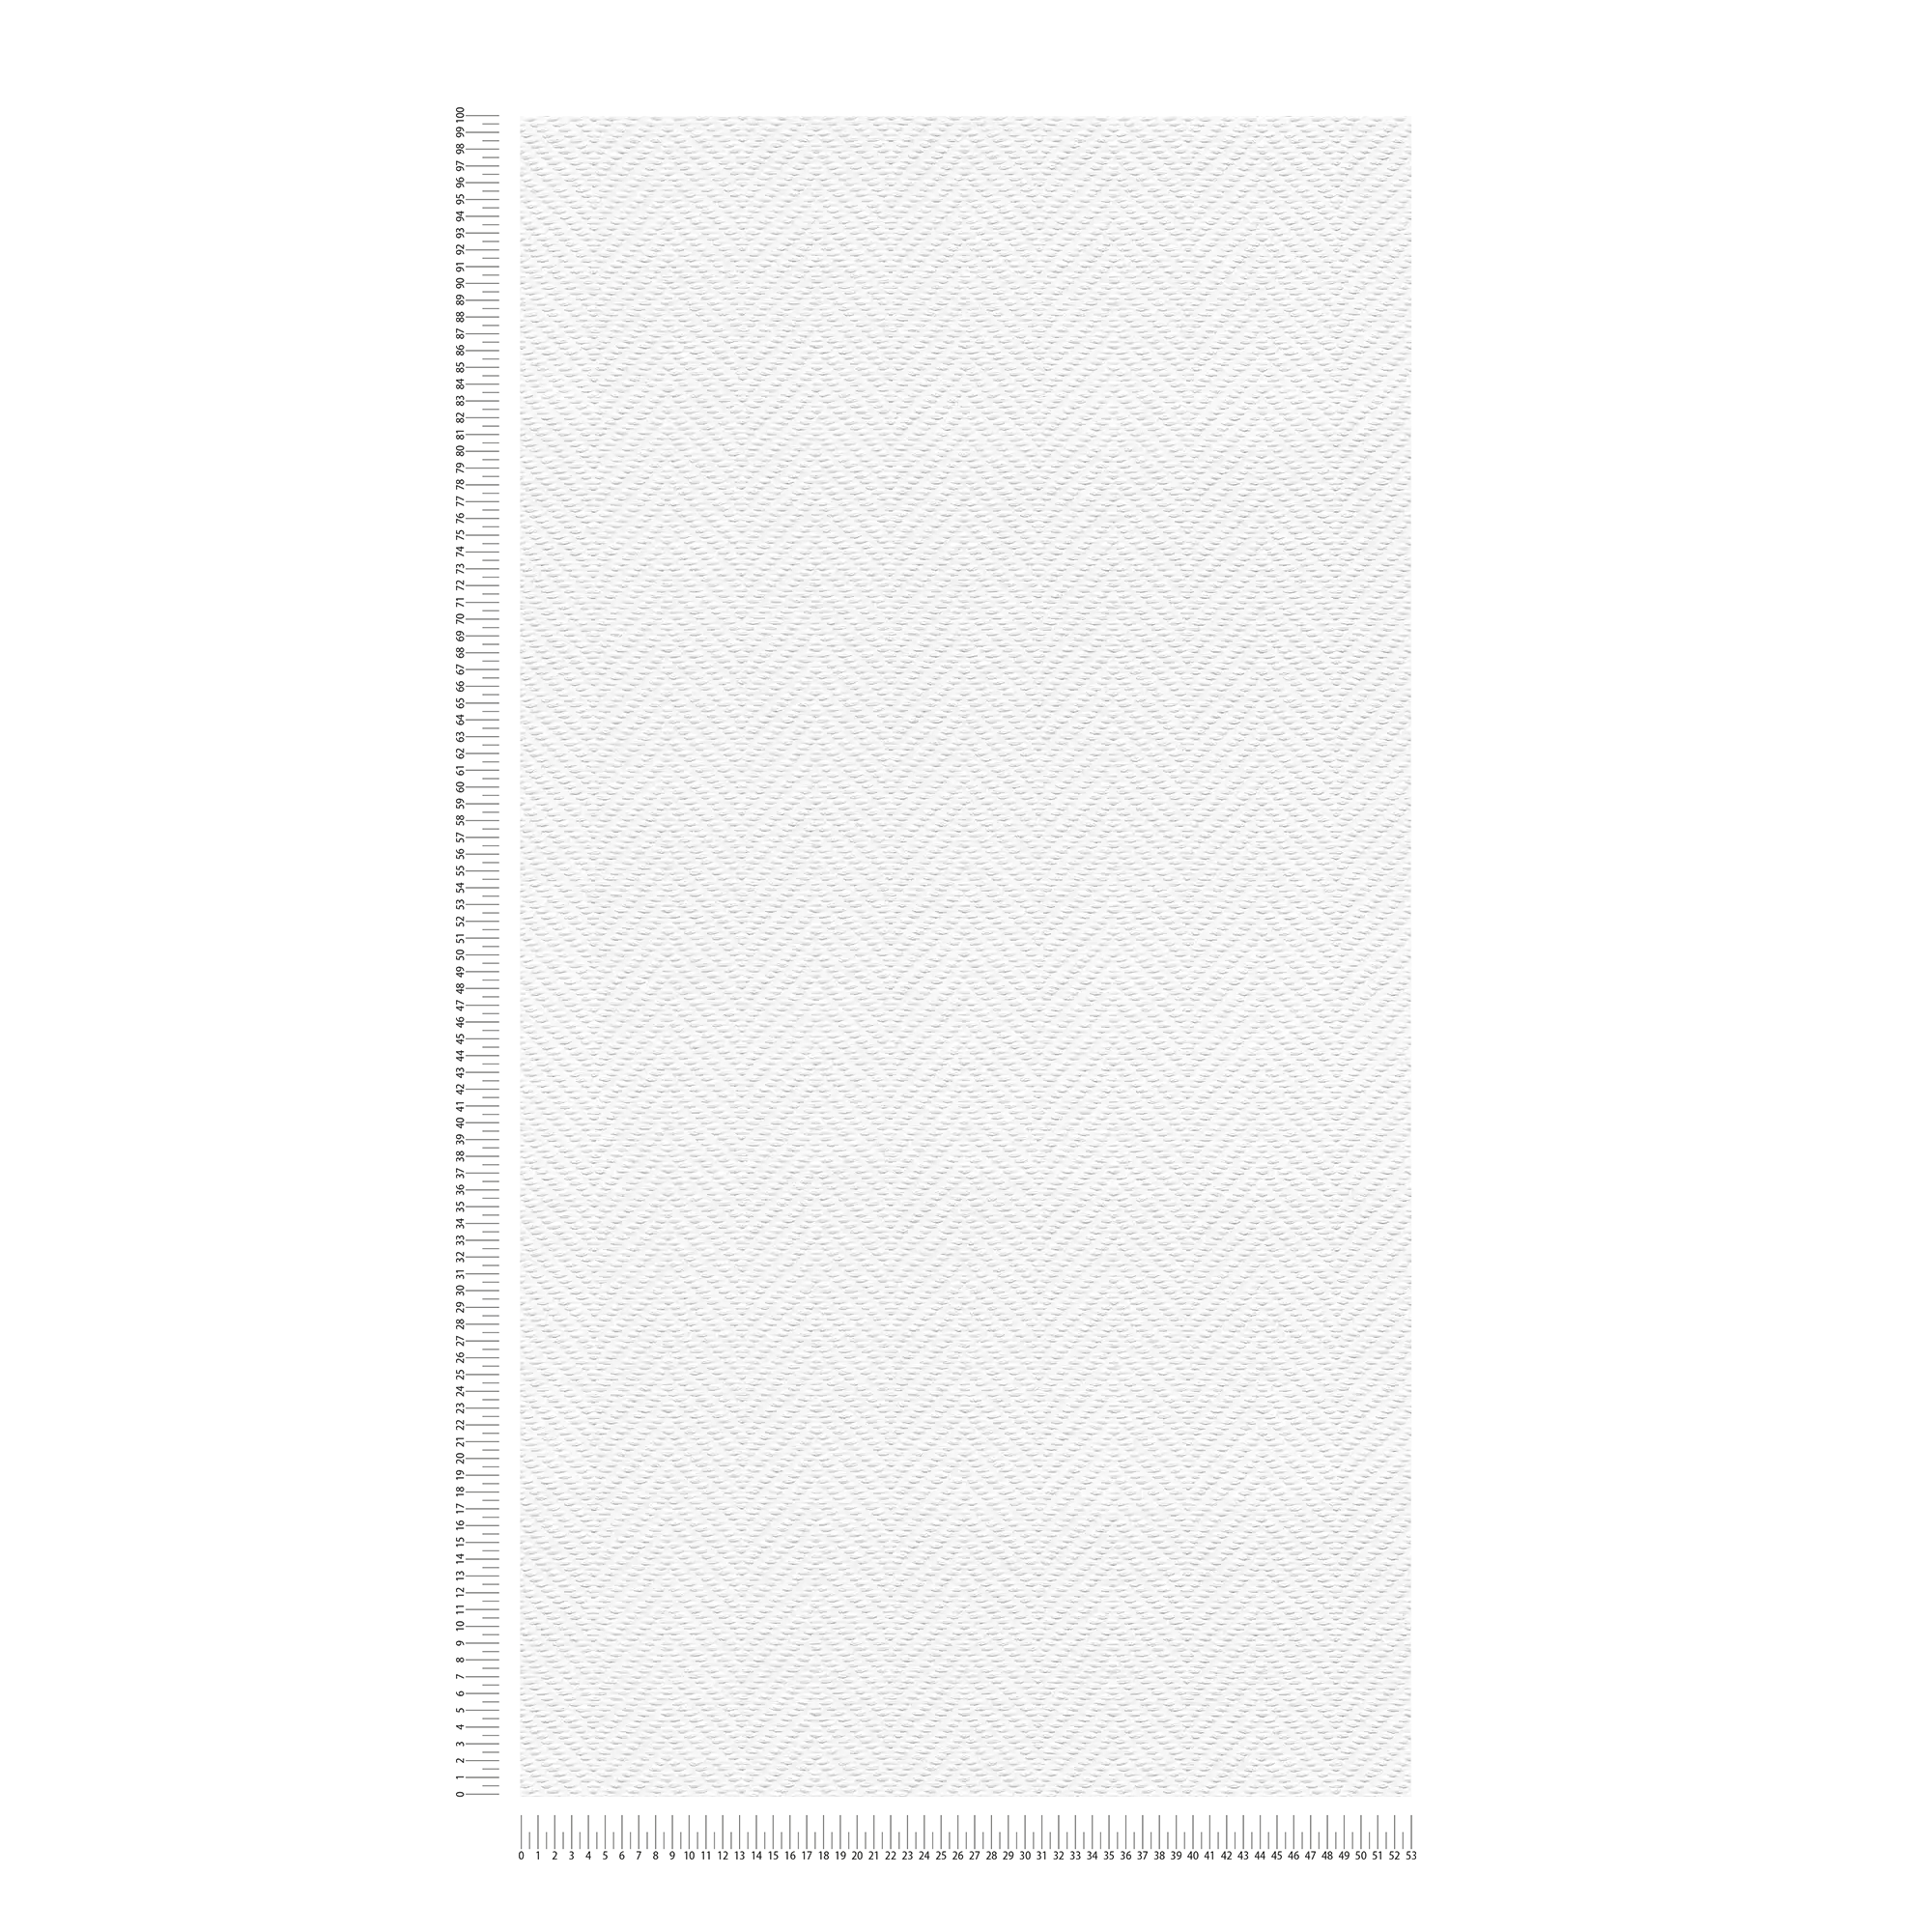             Carta da parati in carta bianca con struttura a spina di pesce
        